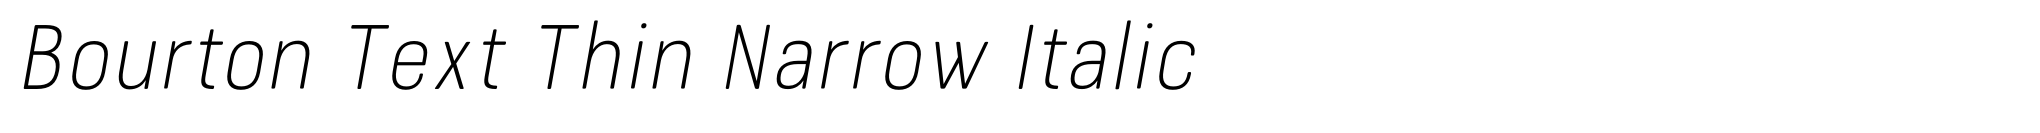 Bourton Text Thin Narrow Italic image